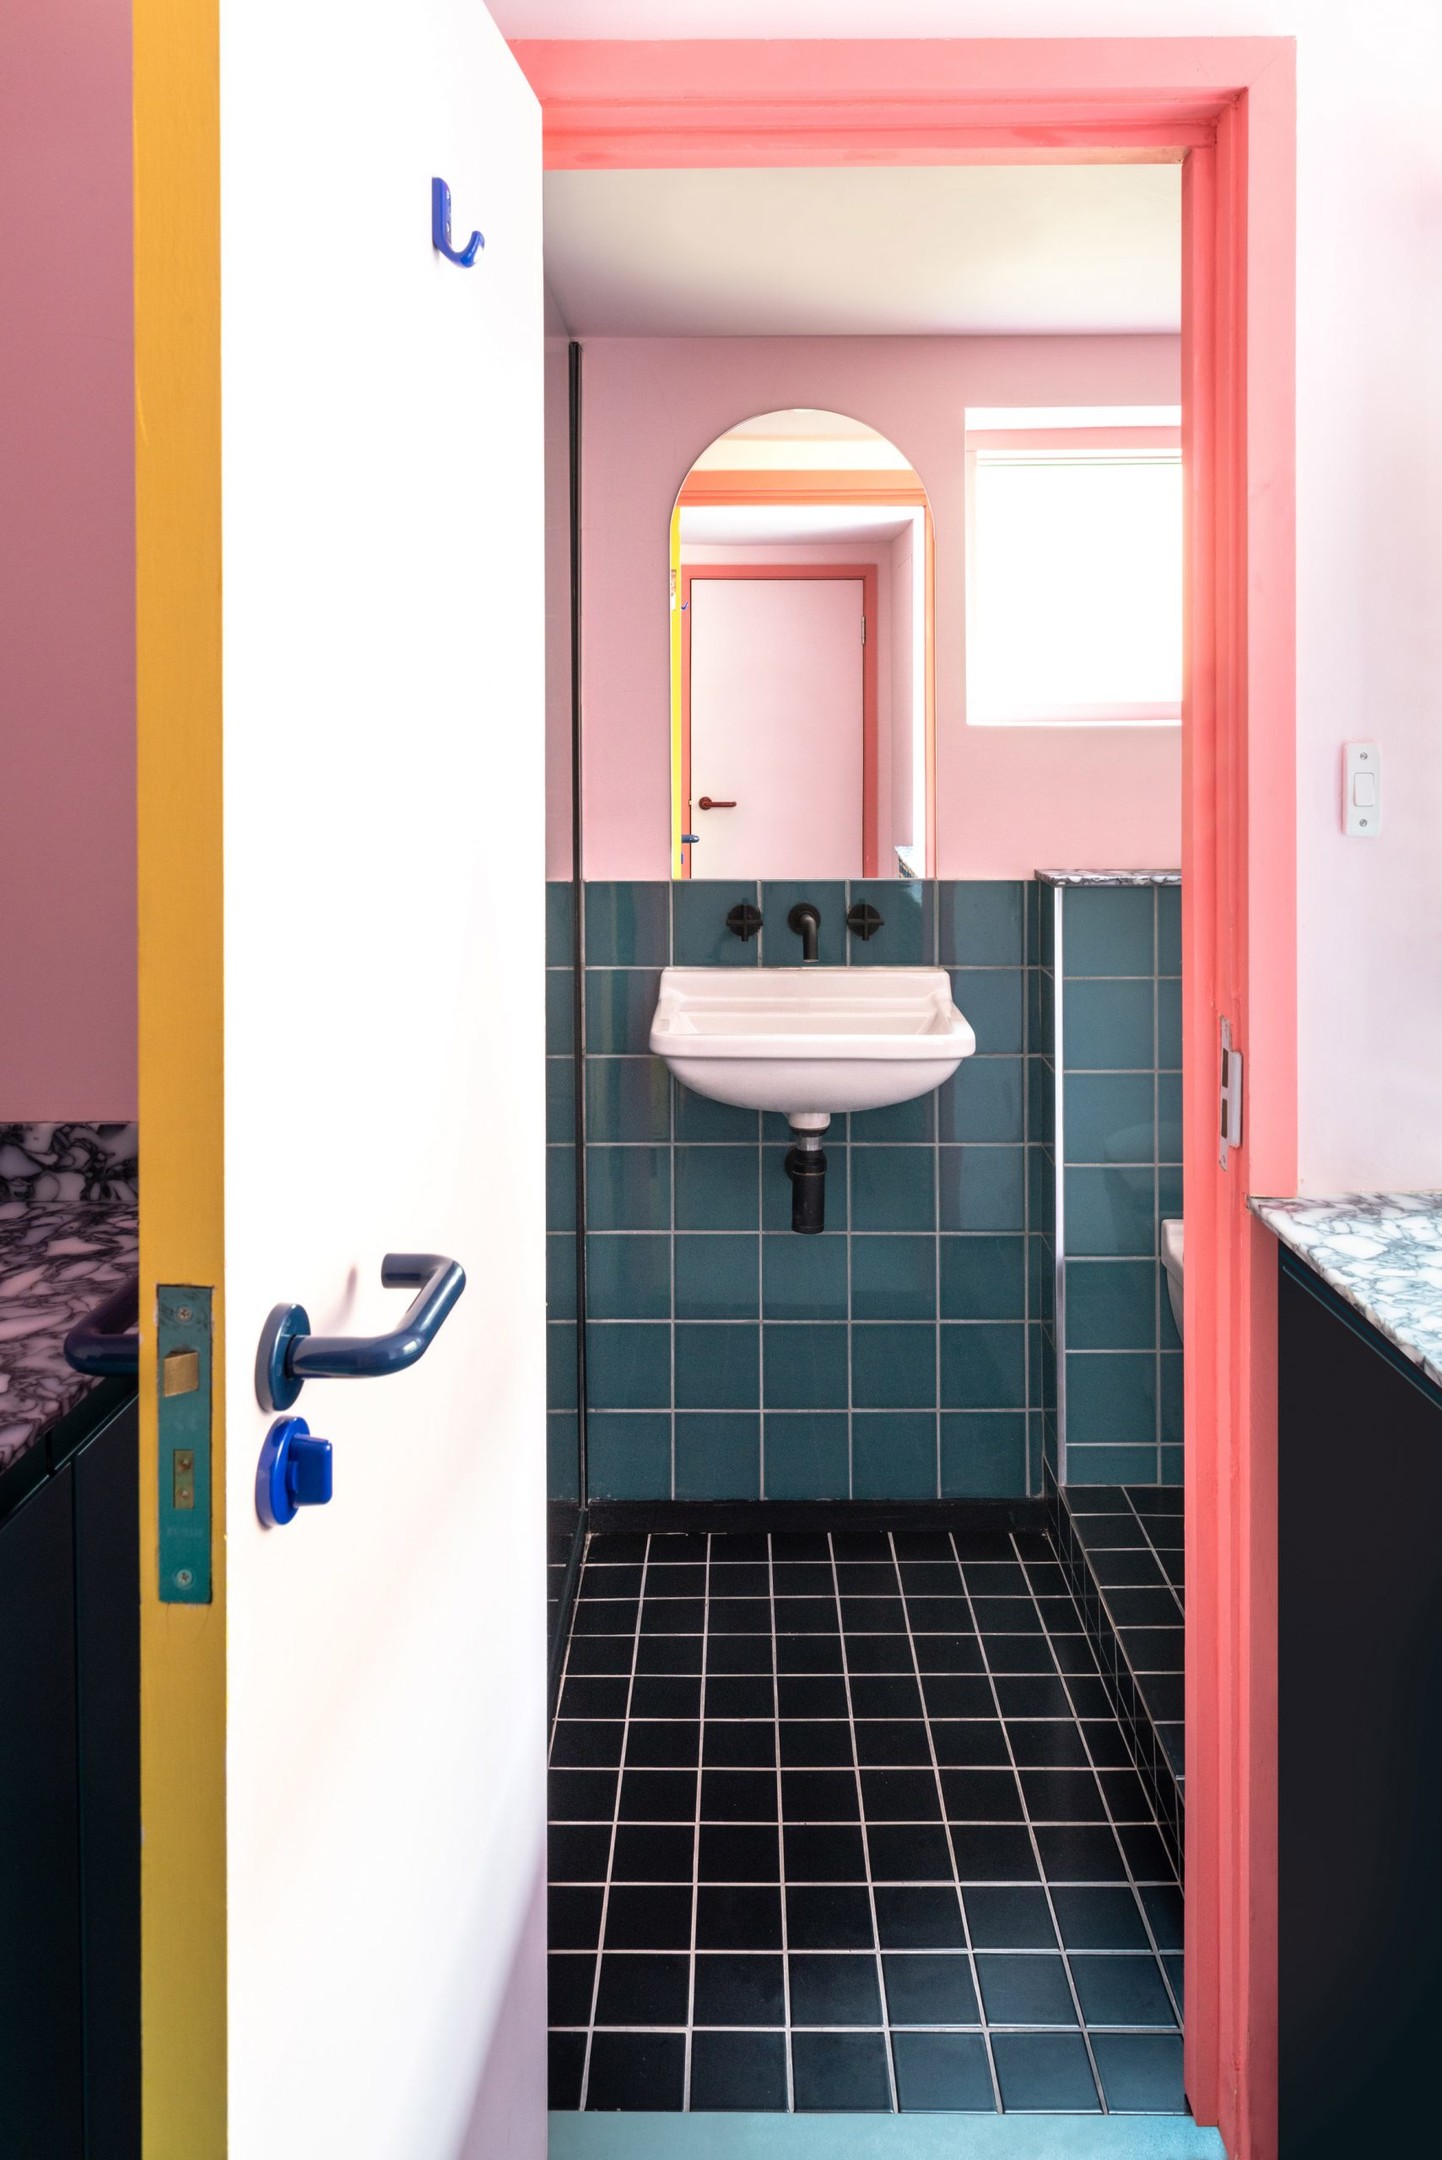 Sàn phòng tắm ốp gạch màu đen, tạo sự tương phản mạnh mẽ với nền tường hồng phối cùng gạch màu xanh. Tấm gương kiểu mái vòm phía trên bồn rửa cũng góp phần 'cơi nới' không gian và phản chiếu ánh sáng cho nhà vệ sinh nhỏ.